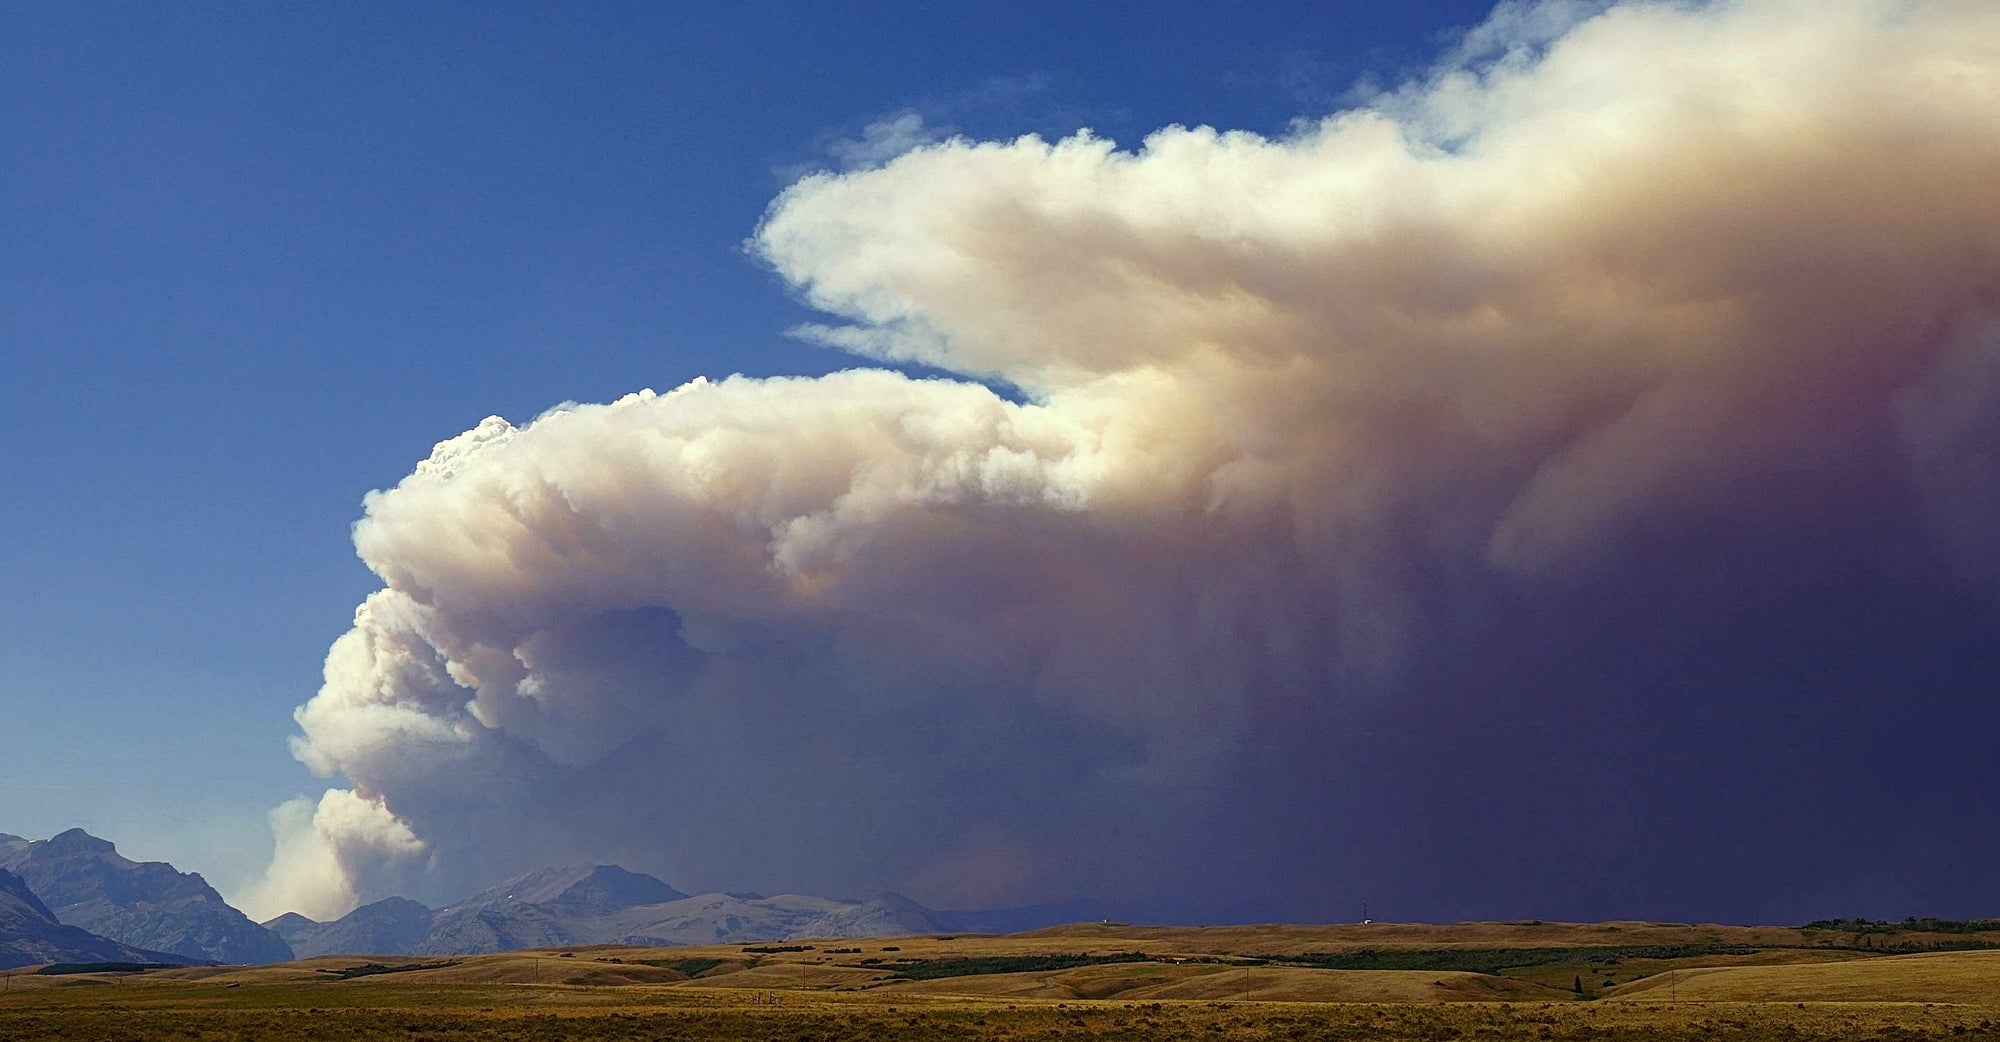 Plume of smoke seen in Montana.